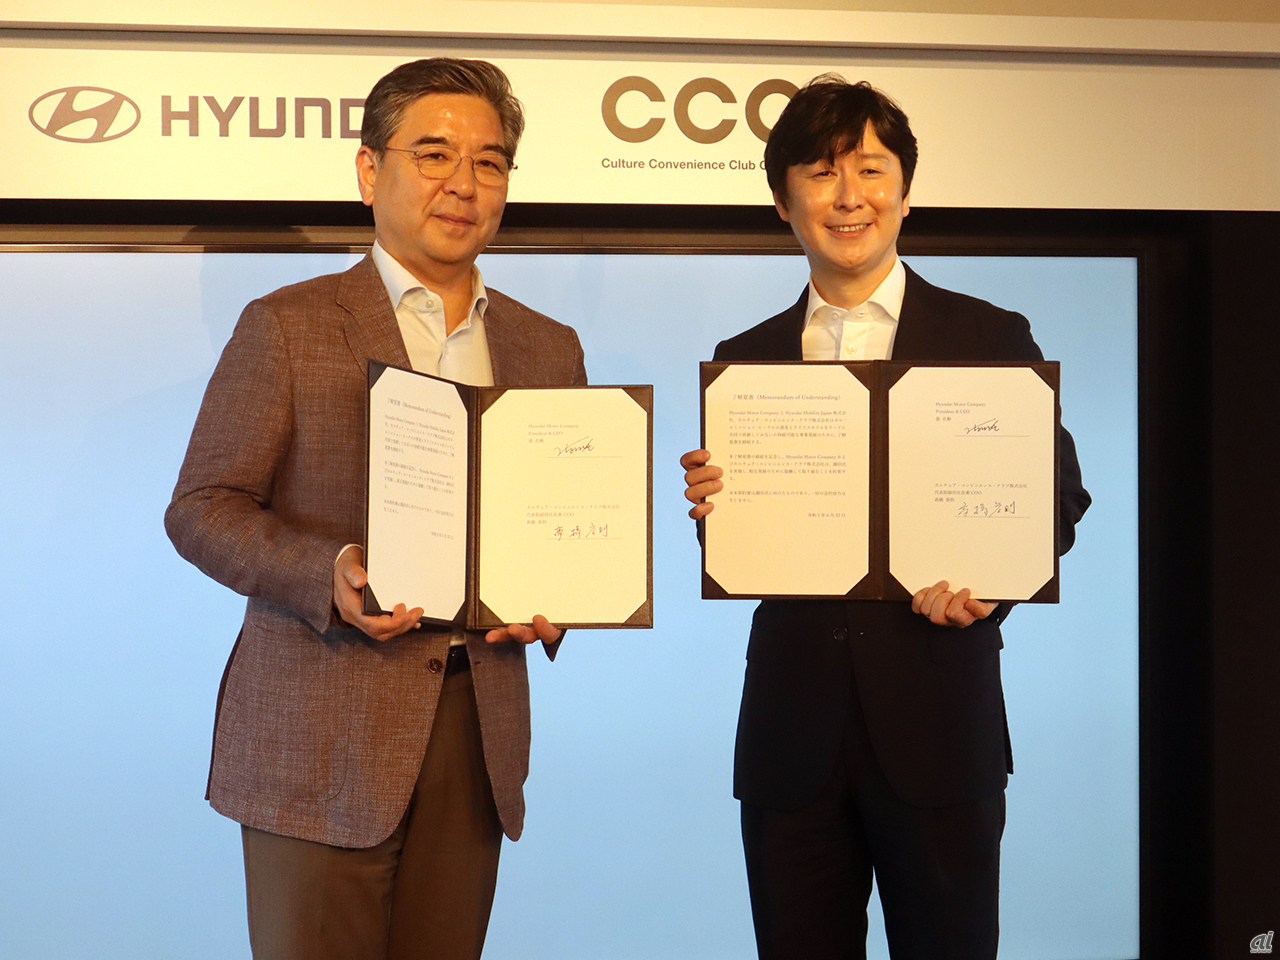 （左から）Hyundai Motor Company 代表取締役社長 兼 CEO 張在勲氏、カルチュア・コンビニエンス・クラブ 代表取締役社長 兼 COO 高橋誉則氏